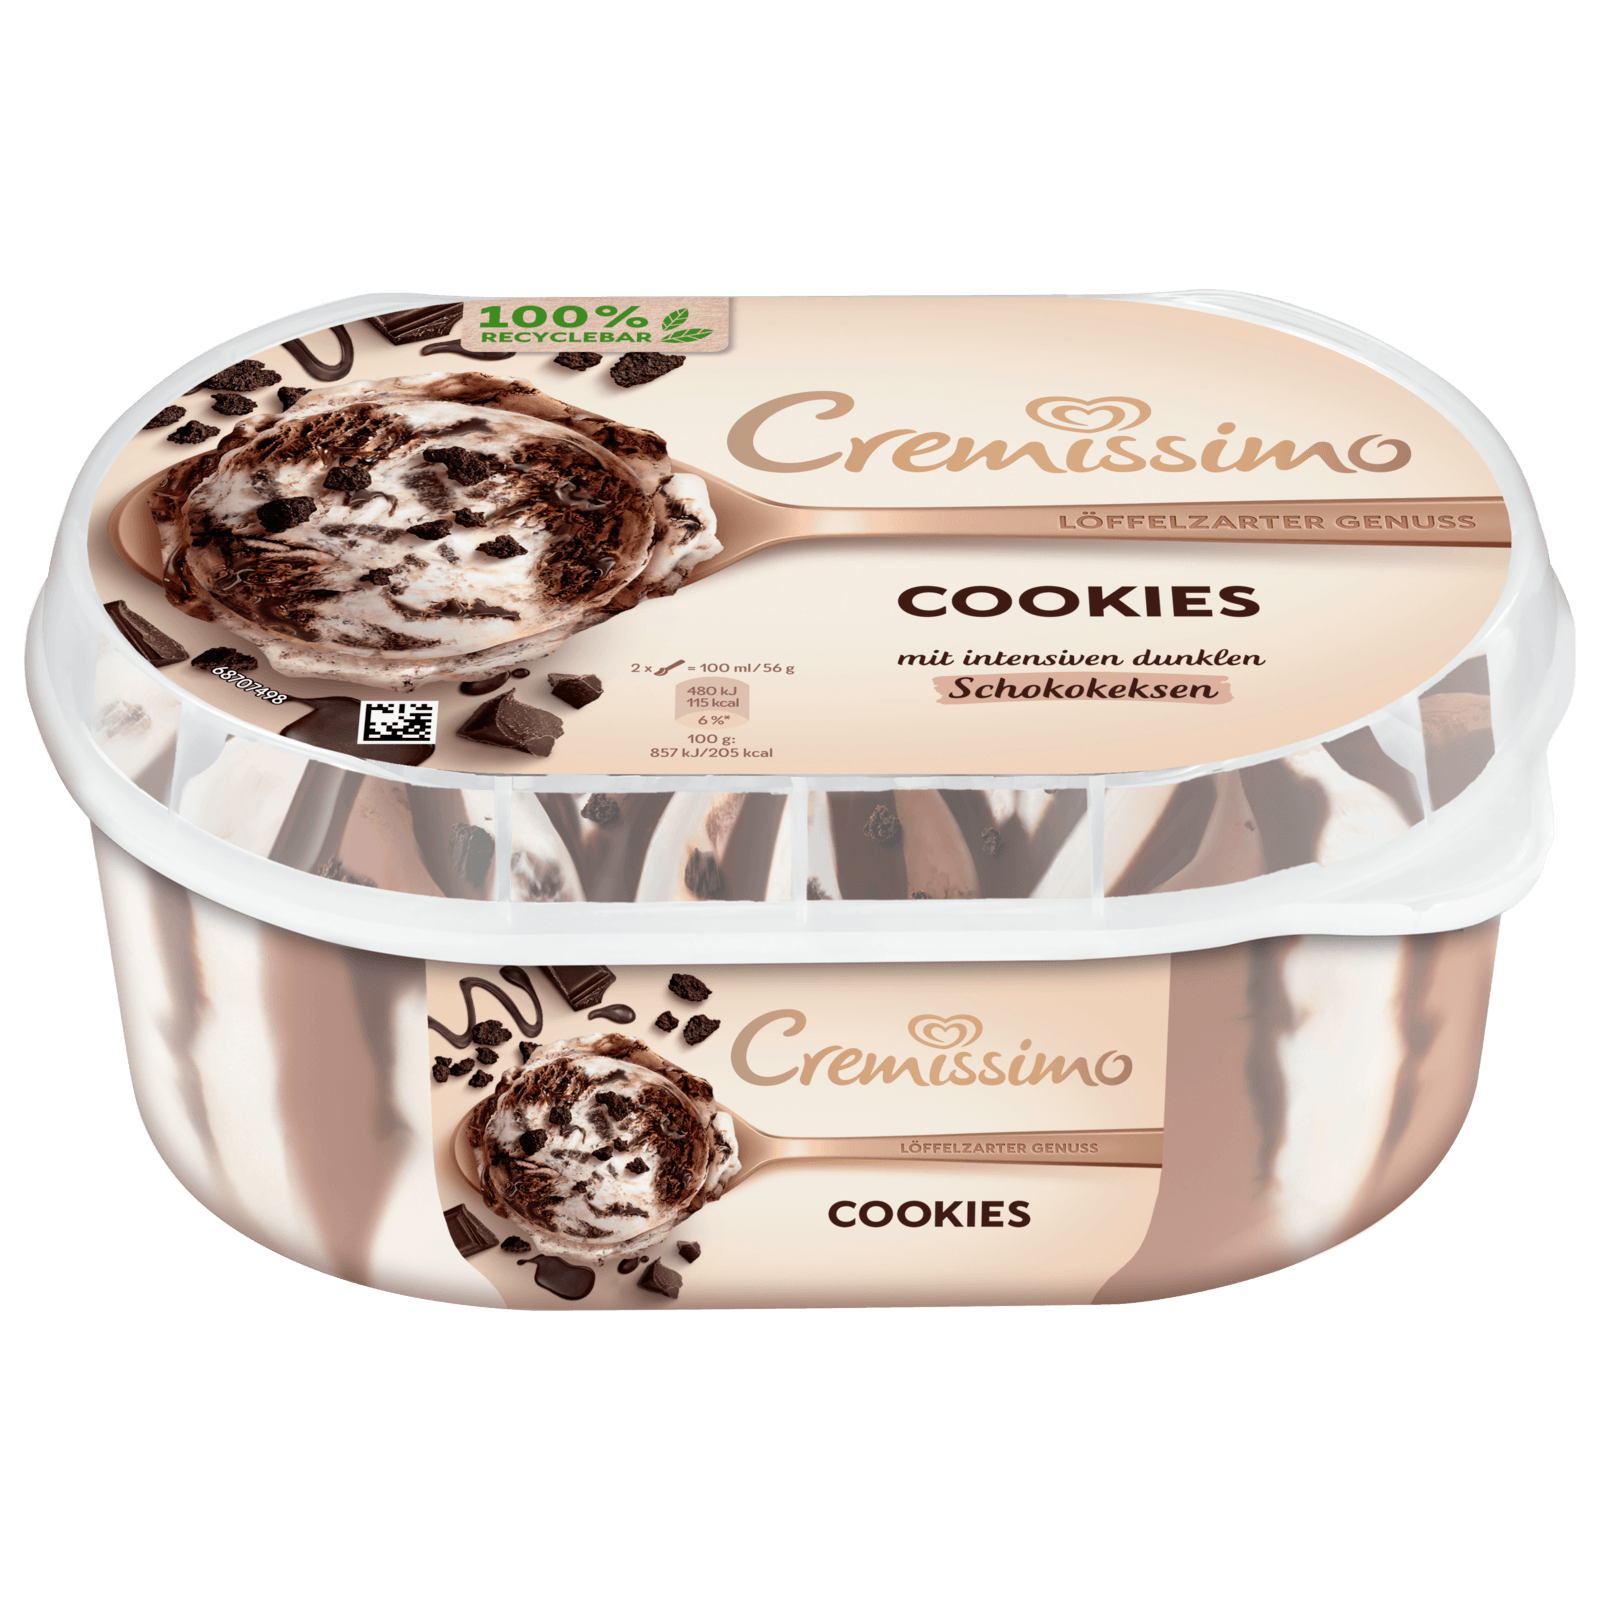 Cremissimo Eiscreme Cookies 900ml bei REWE online bestellen!